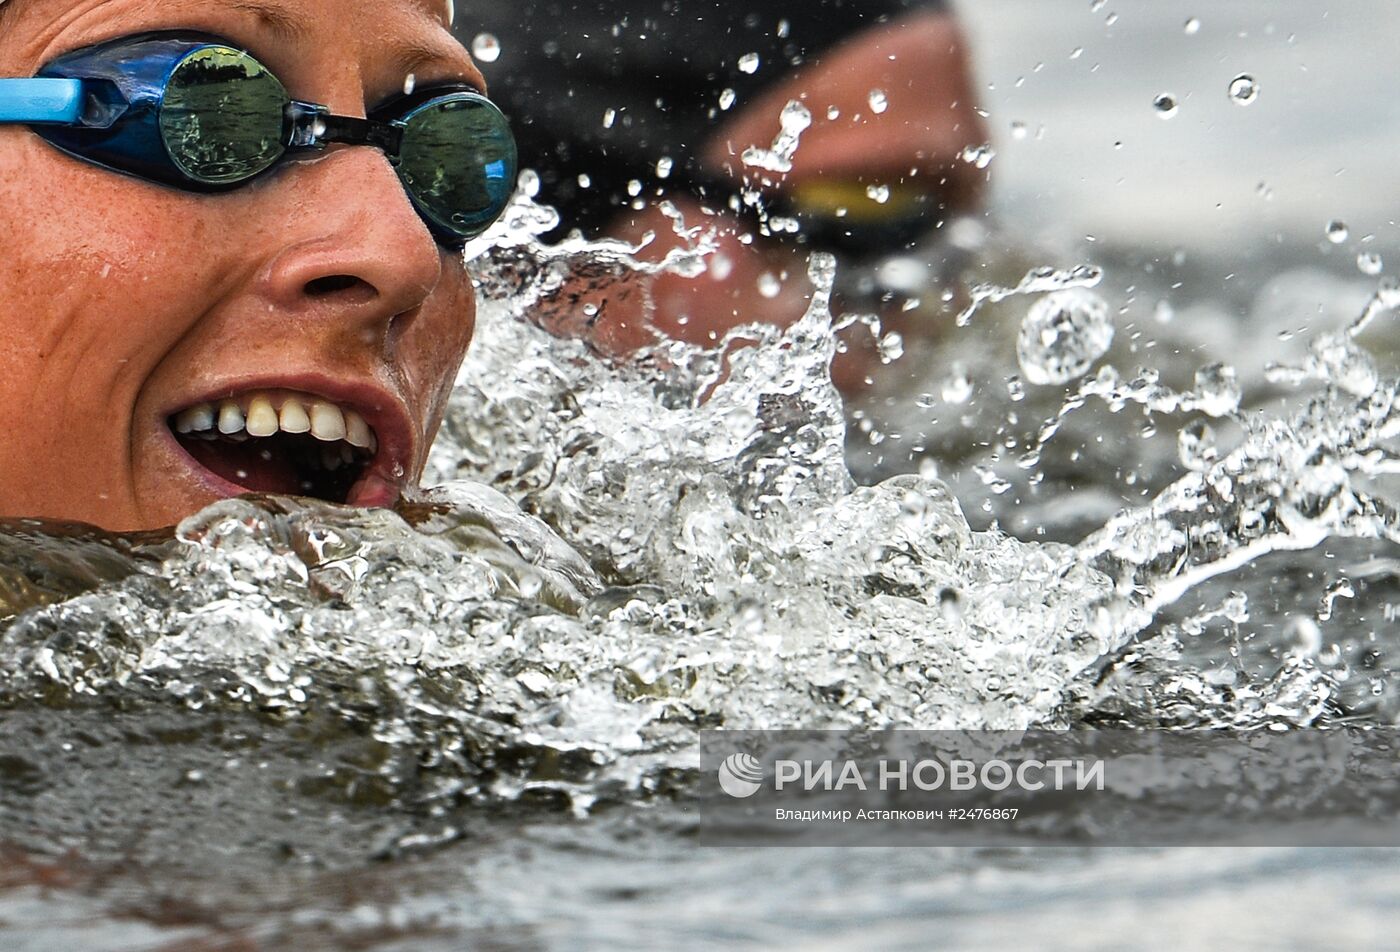 Чемпионат Европы по водным видам спорта. Второй день